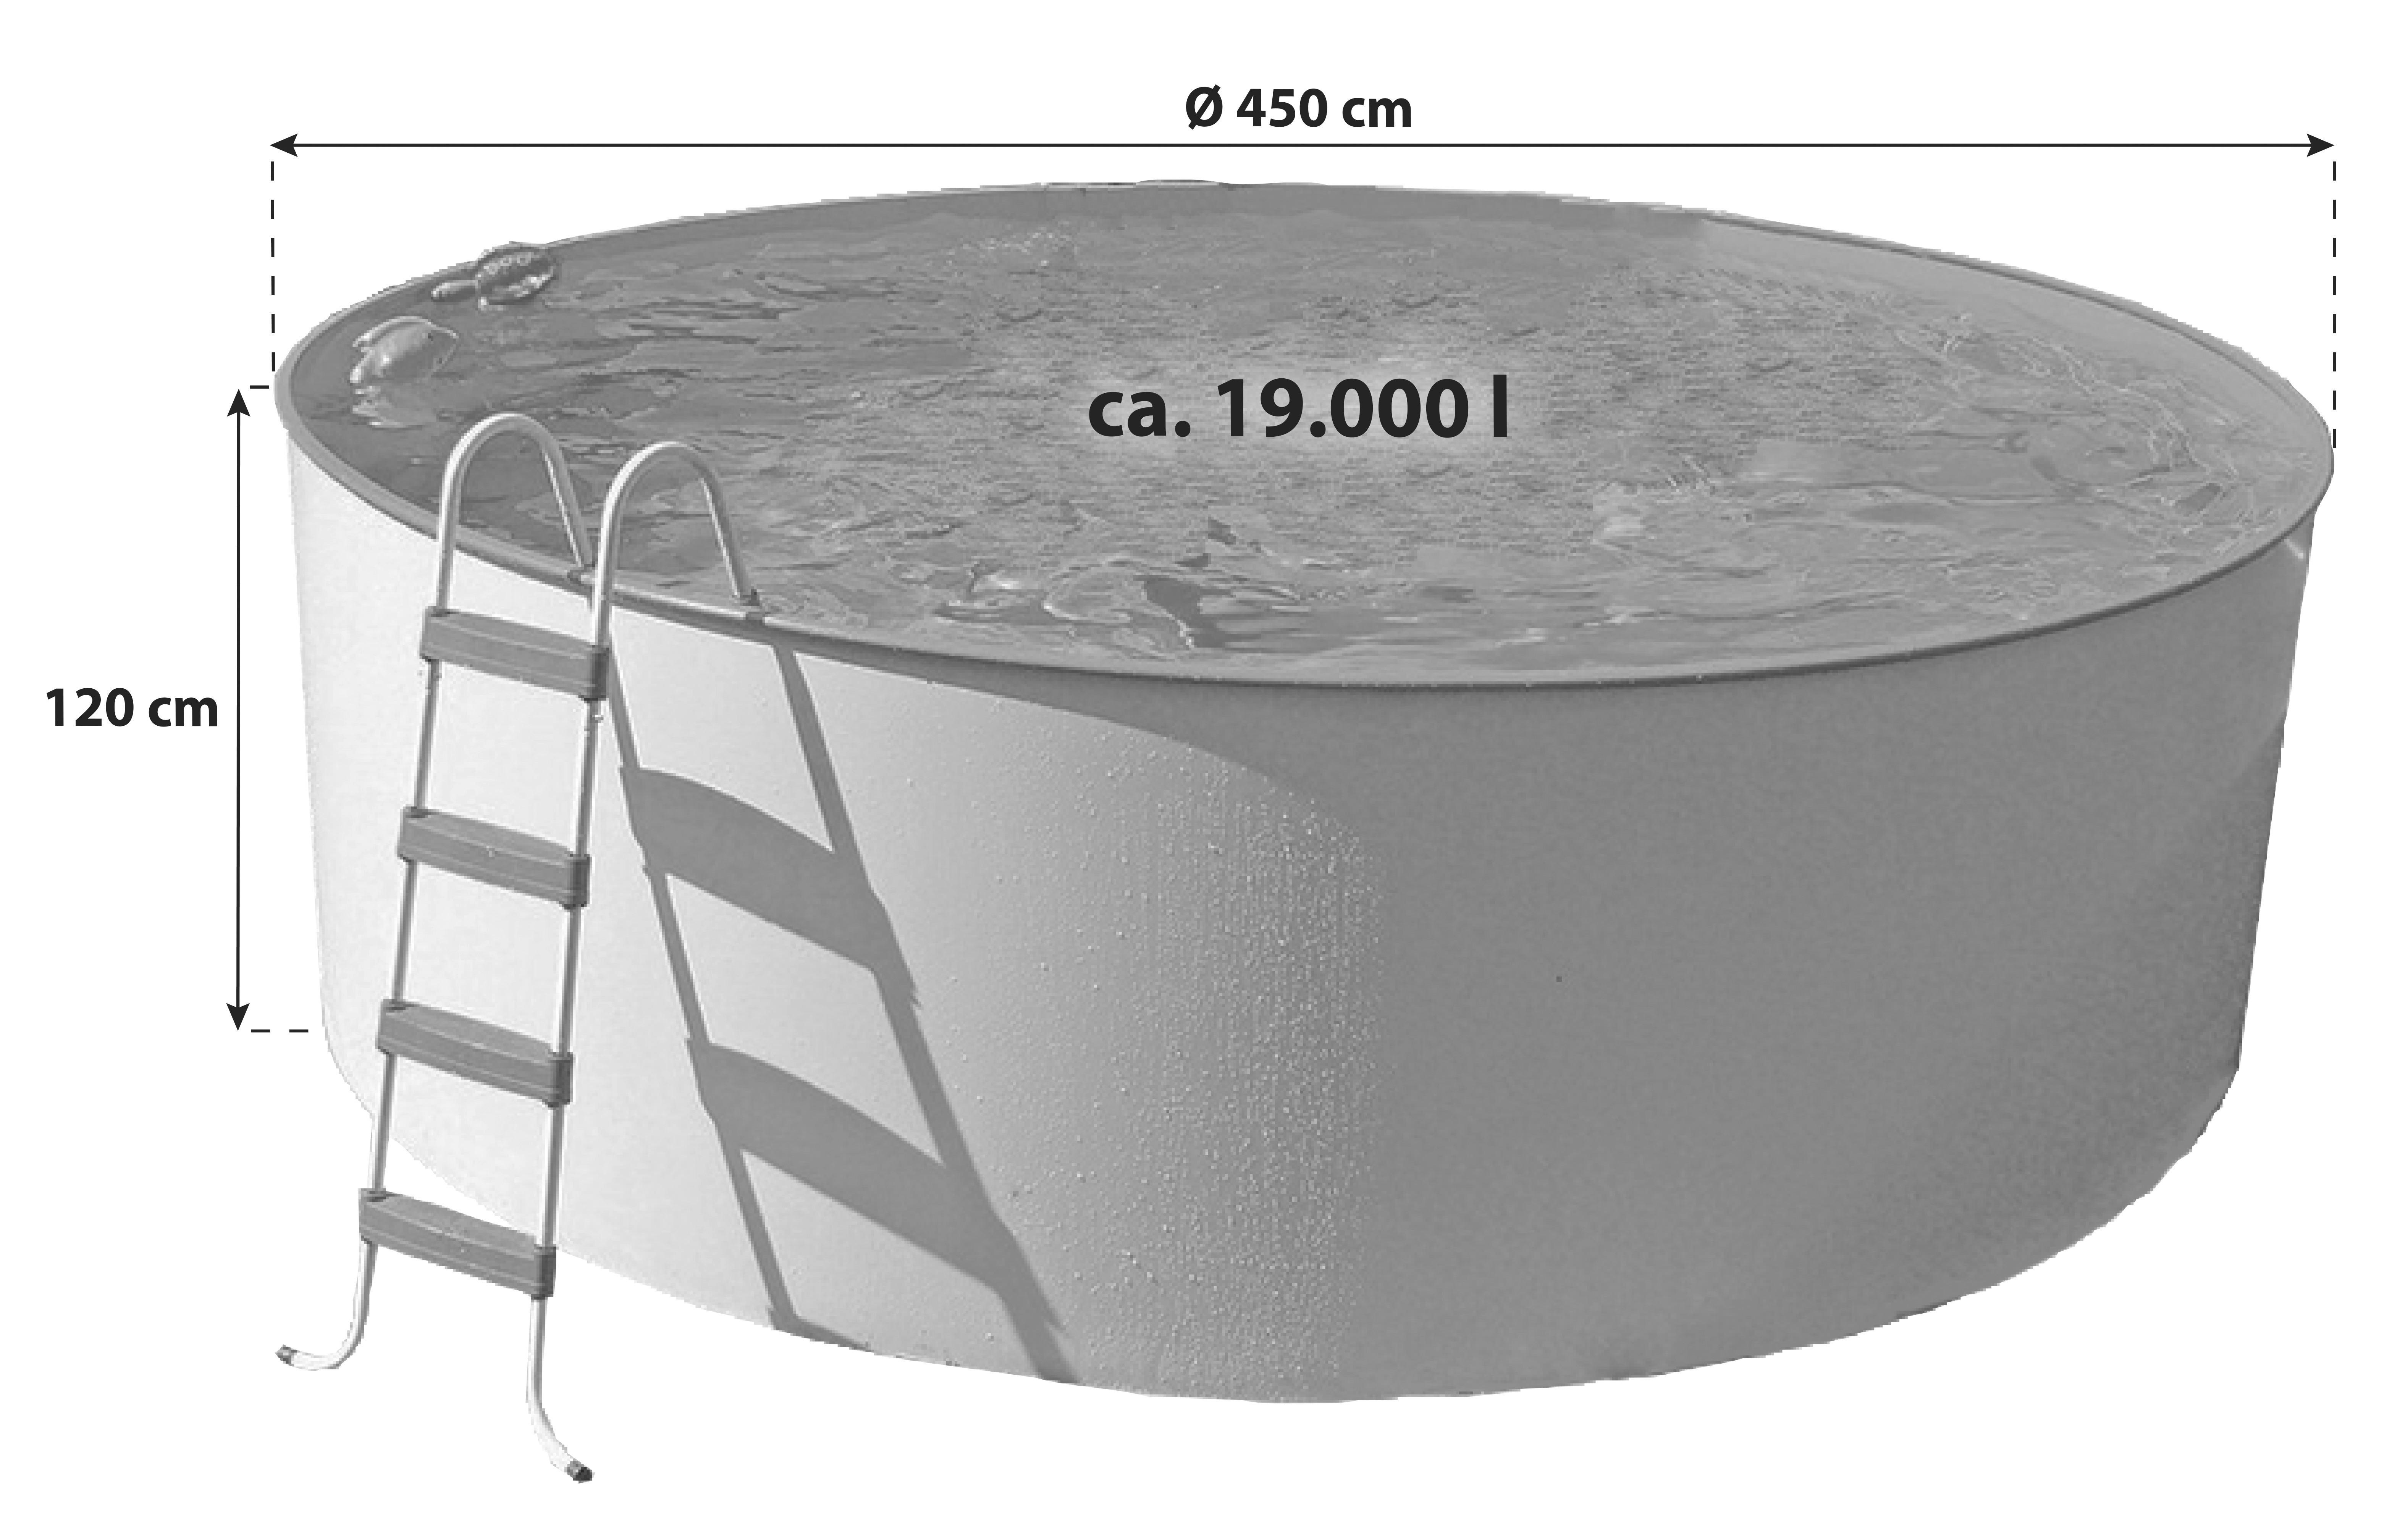 Stahlwandpool Rund Set Steely mit Pumpe Ø 450 cm - Weiß, MODERN, Metall (450/120cm)